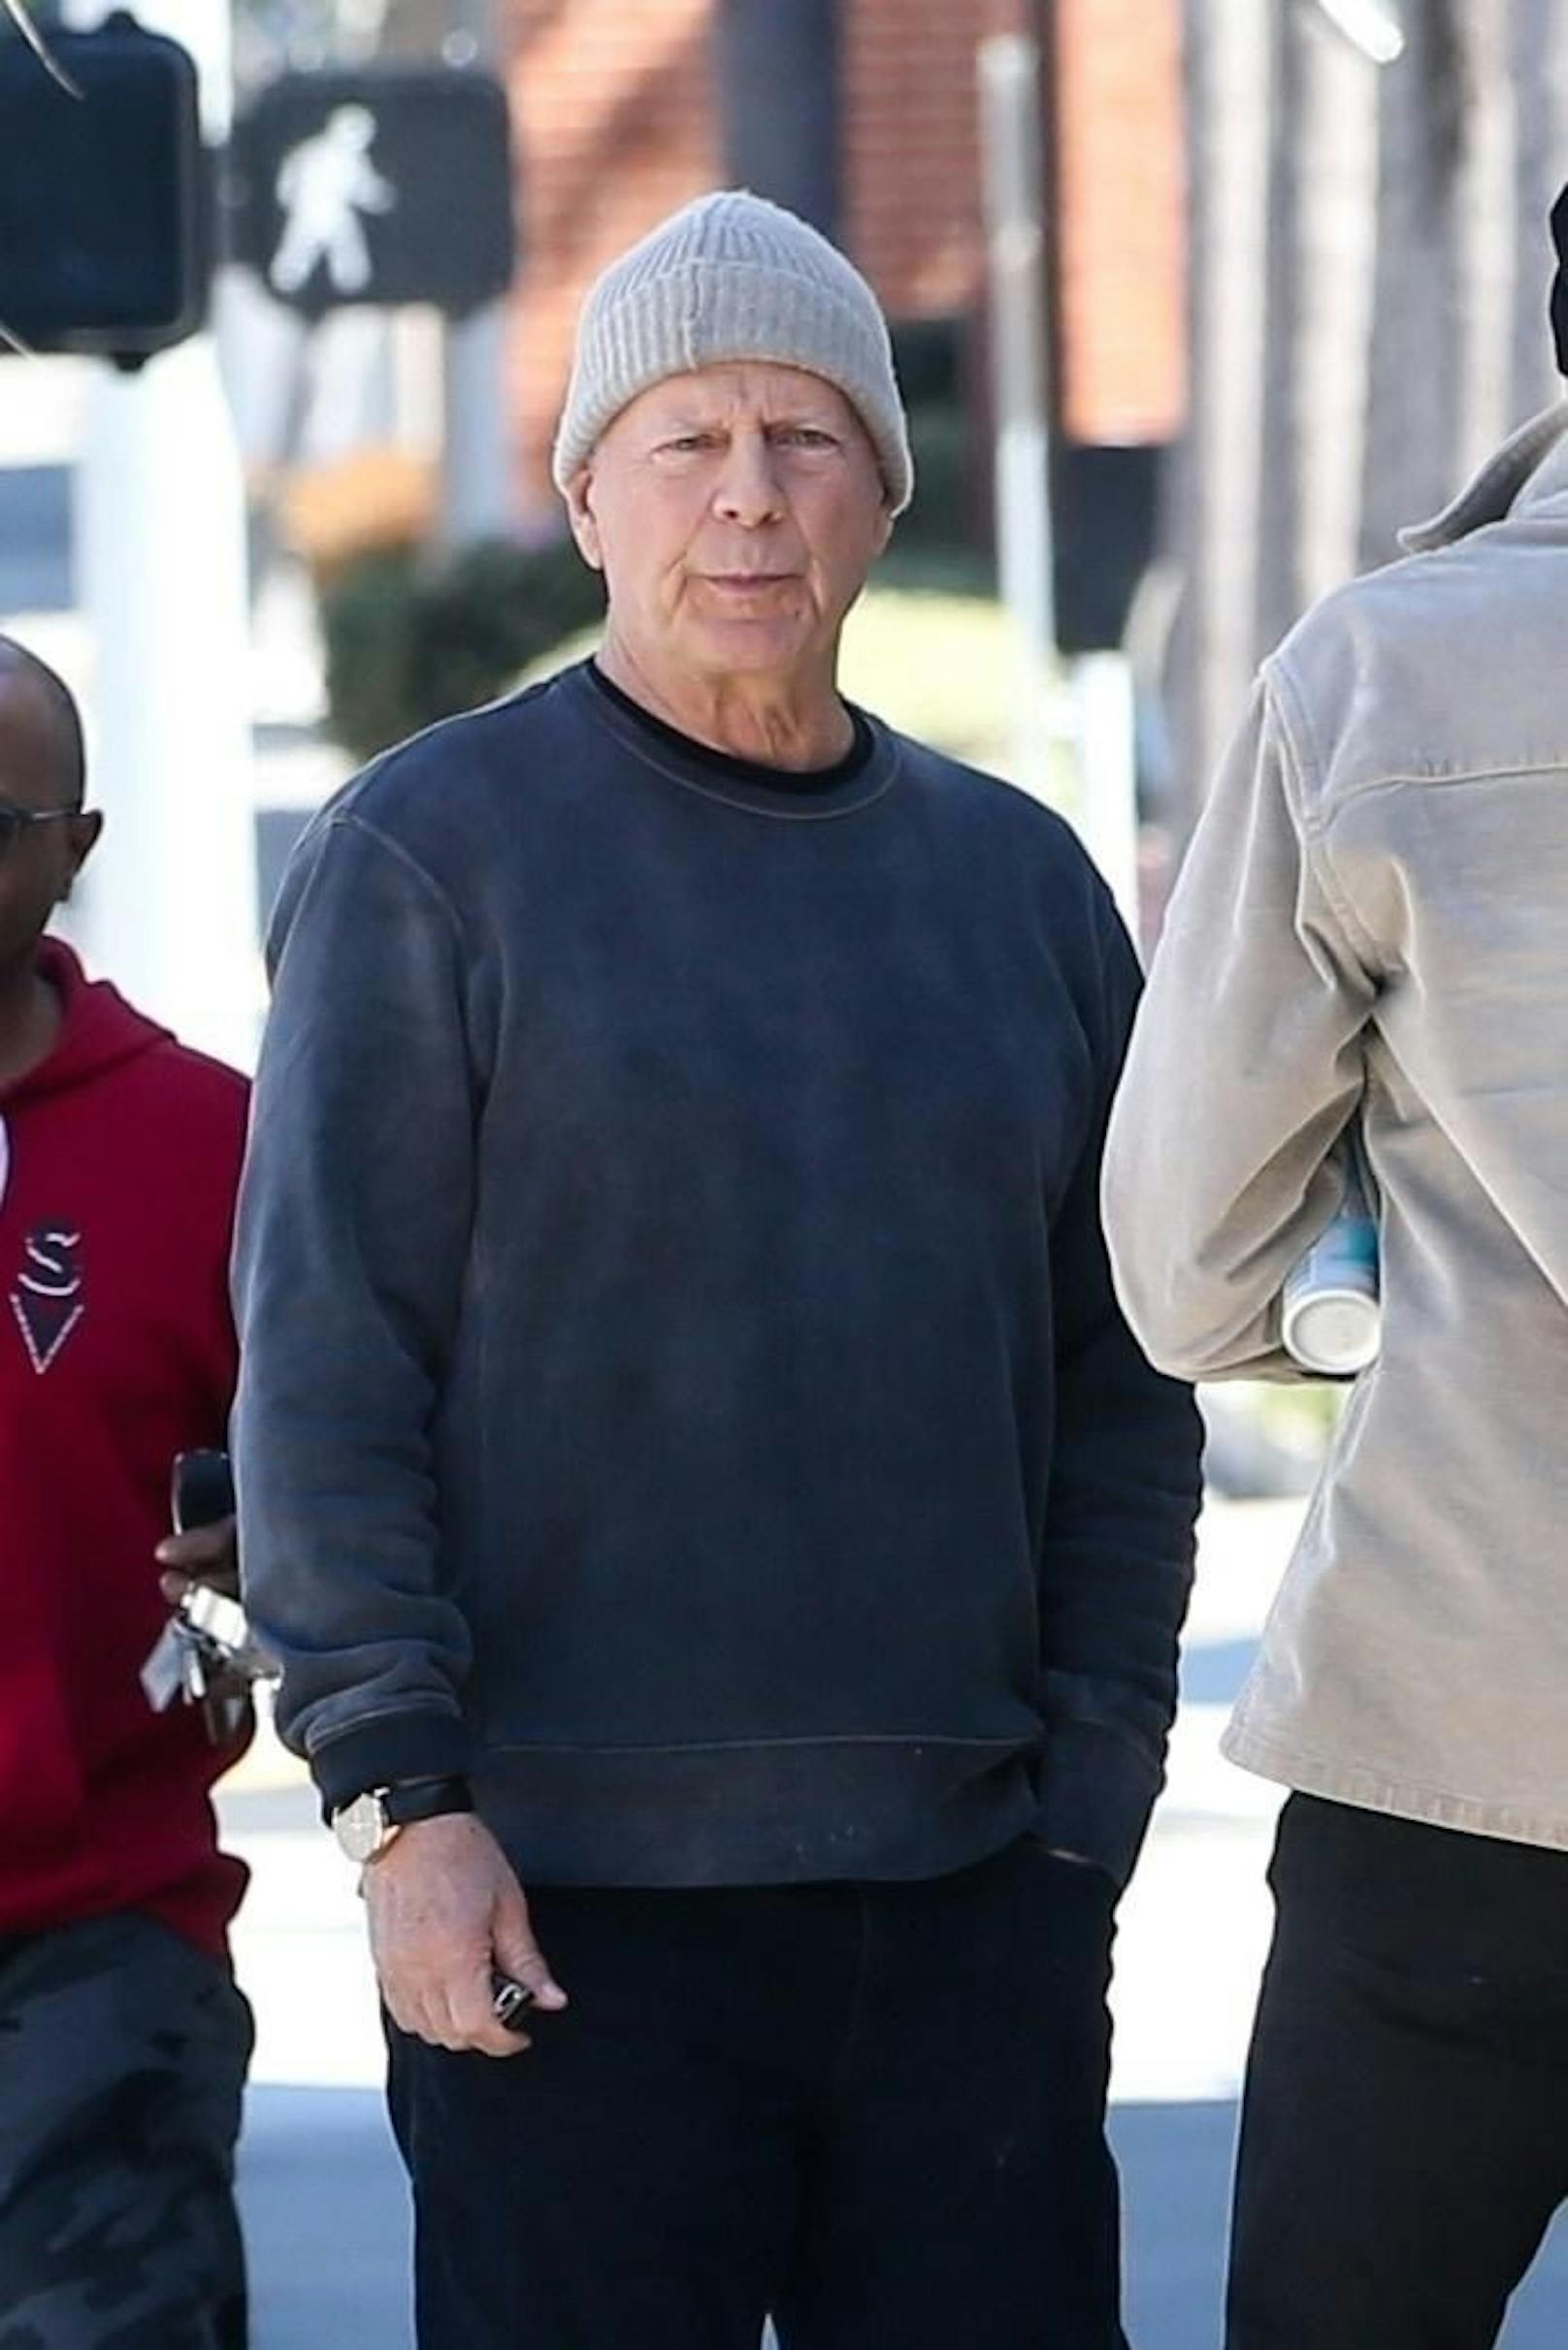 "Krankheit zerstört ihn" – Fans in Sorge um Bruce Willis